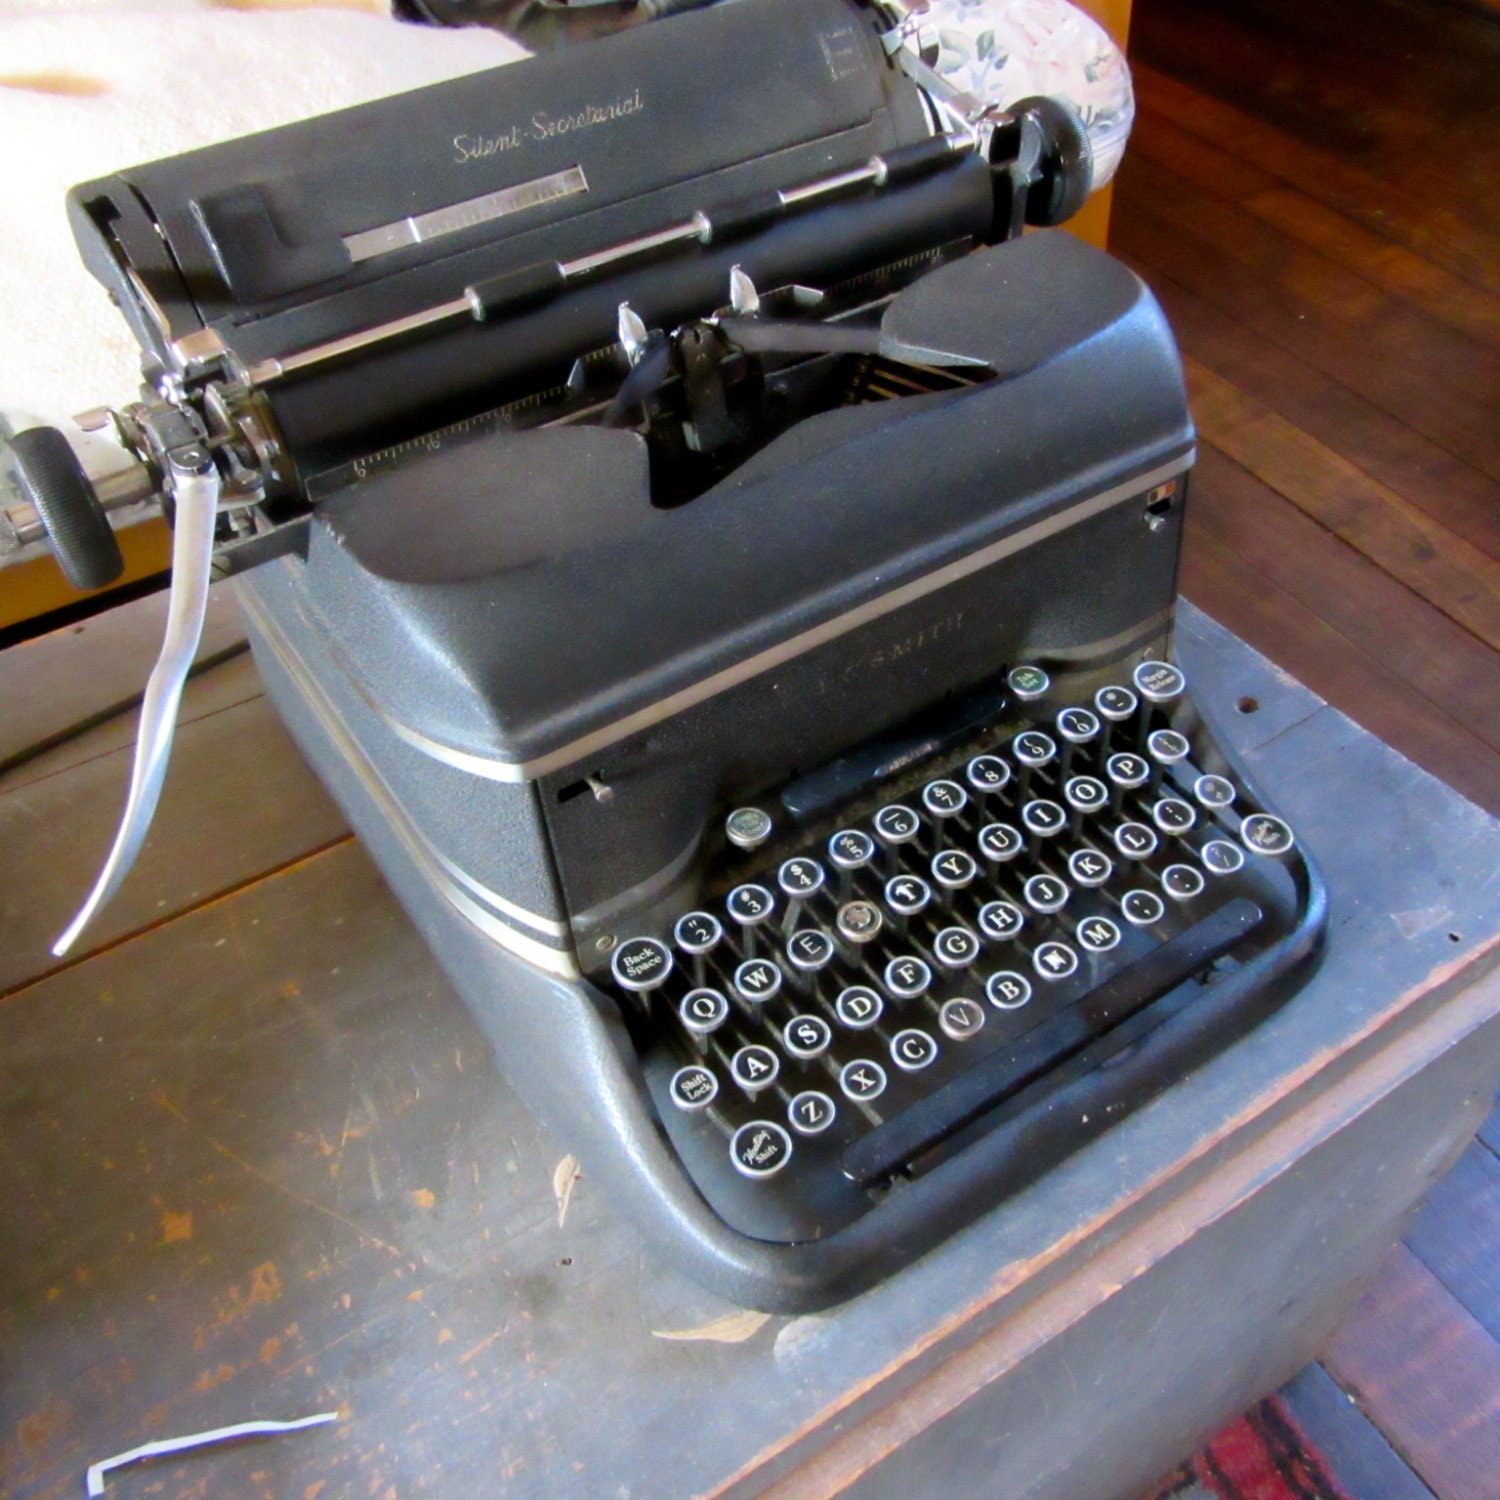 lc smith secretarial typewriter